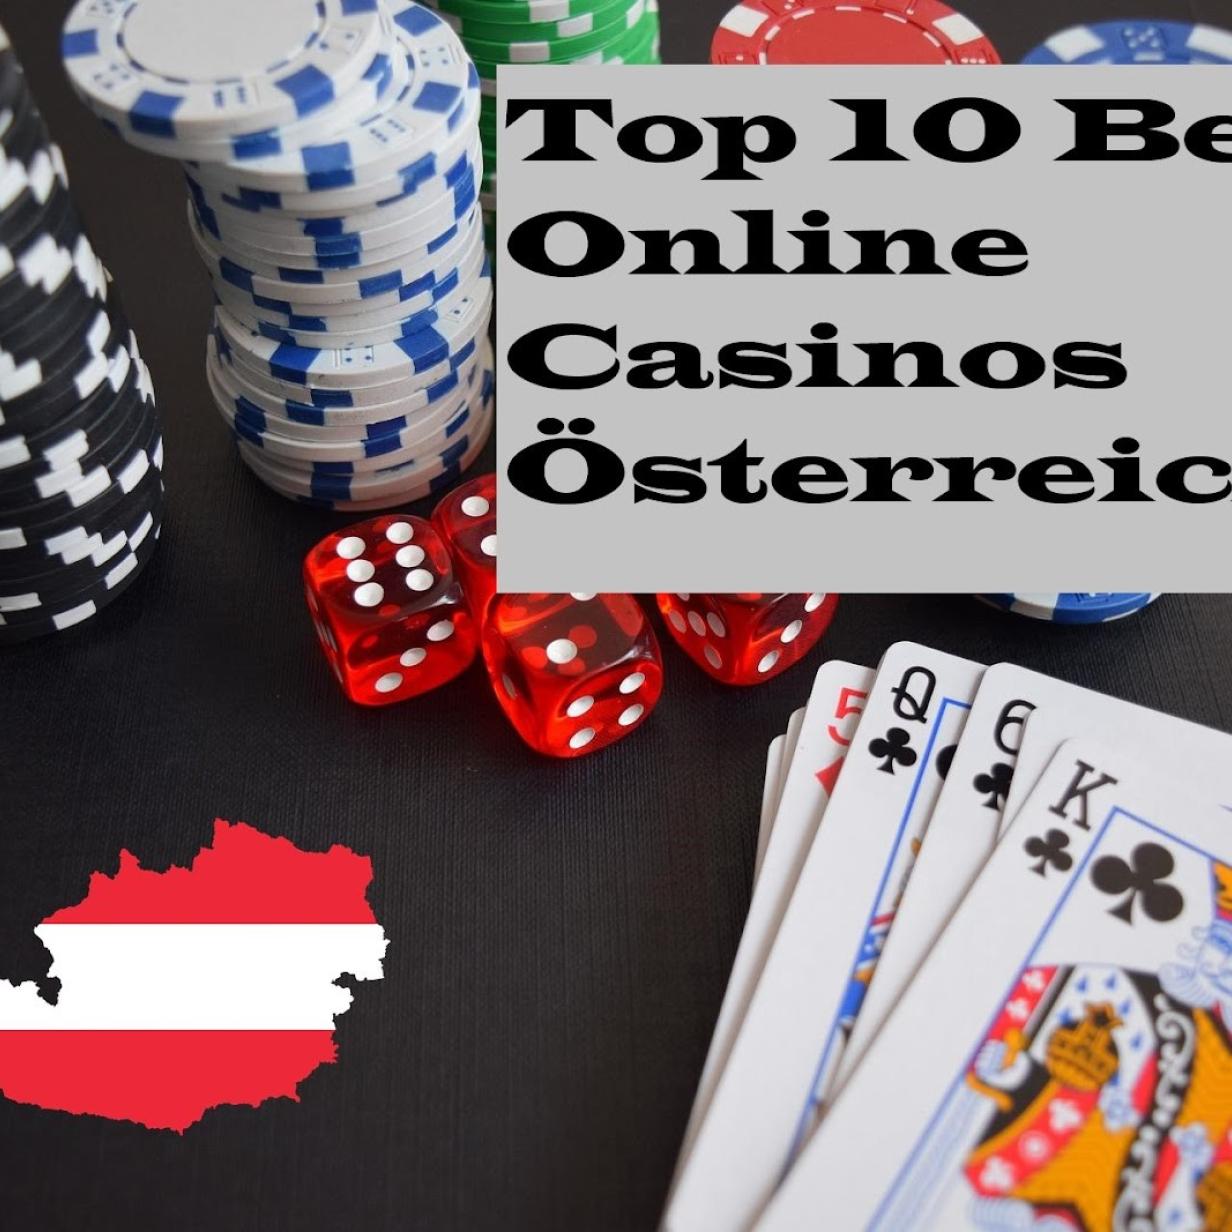 7 erstaunliche Österreich Casino Online -Hacks